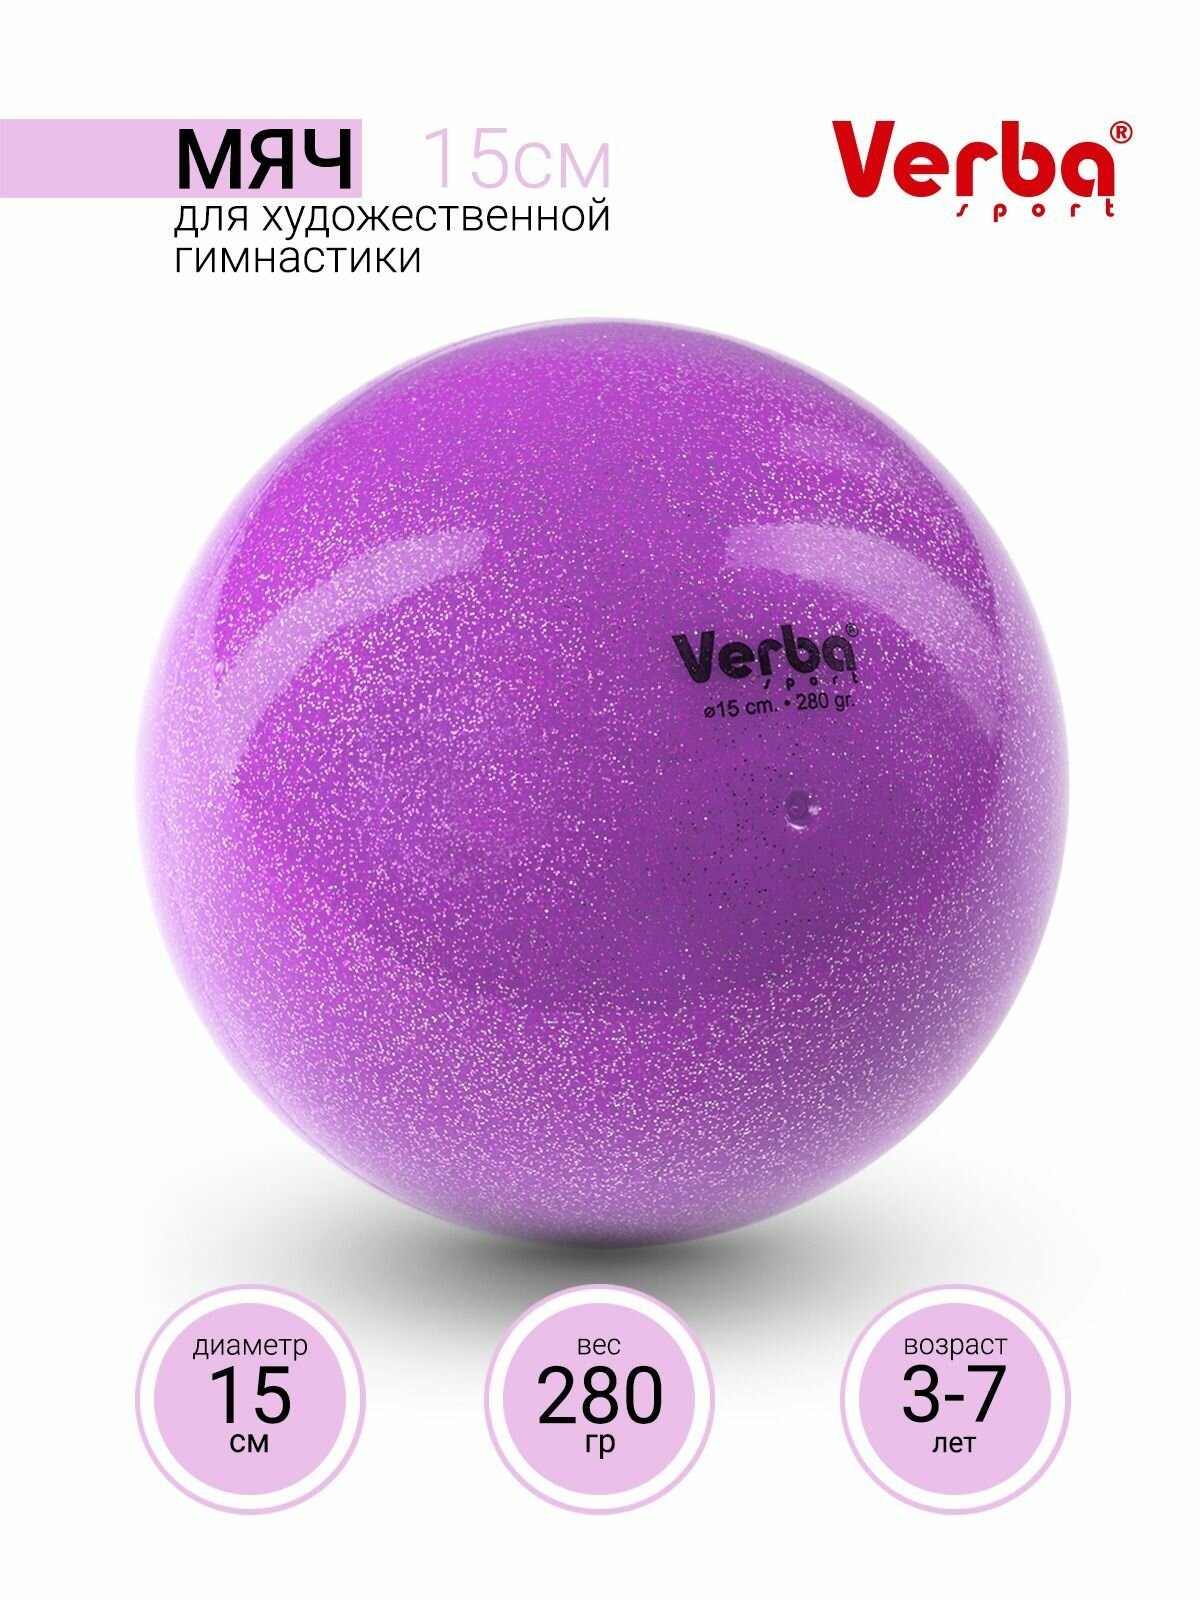 Мяч для художественной гимнастики 15см. Verba Sport с блестками лиловый